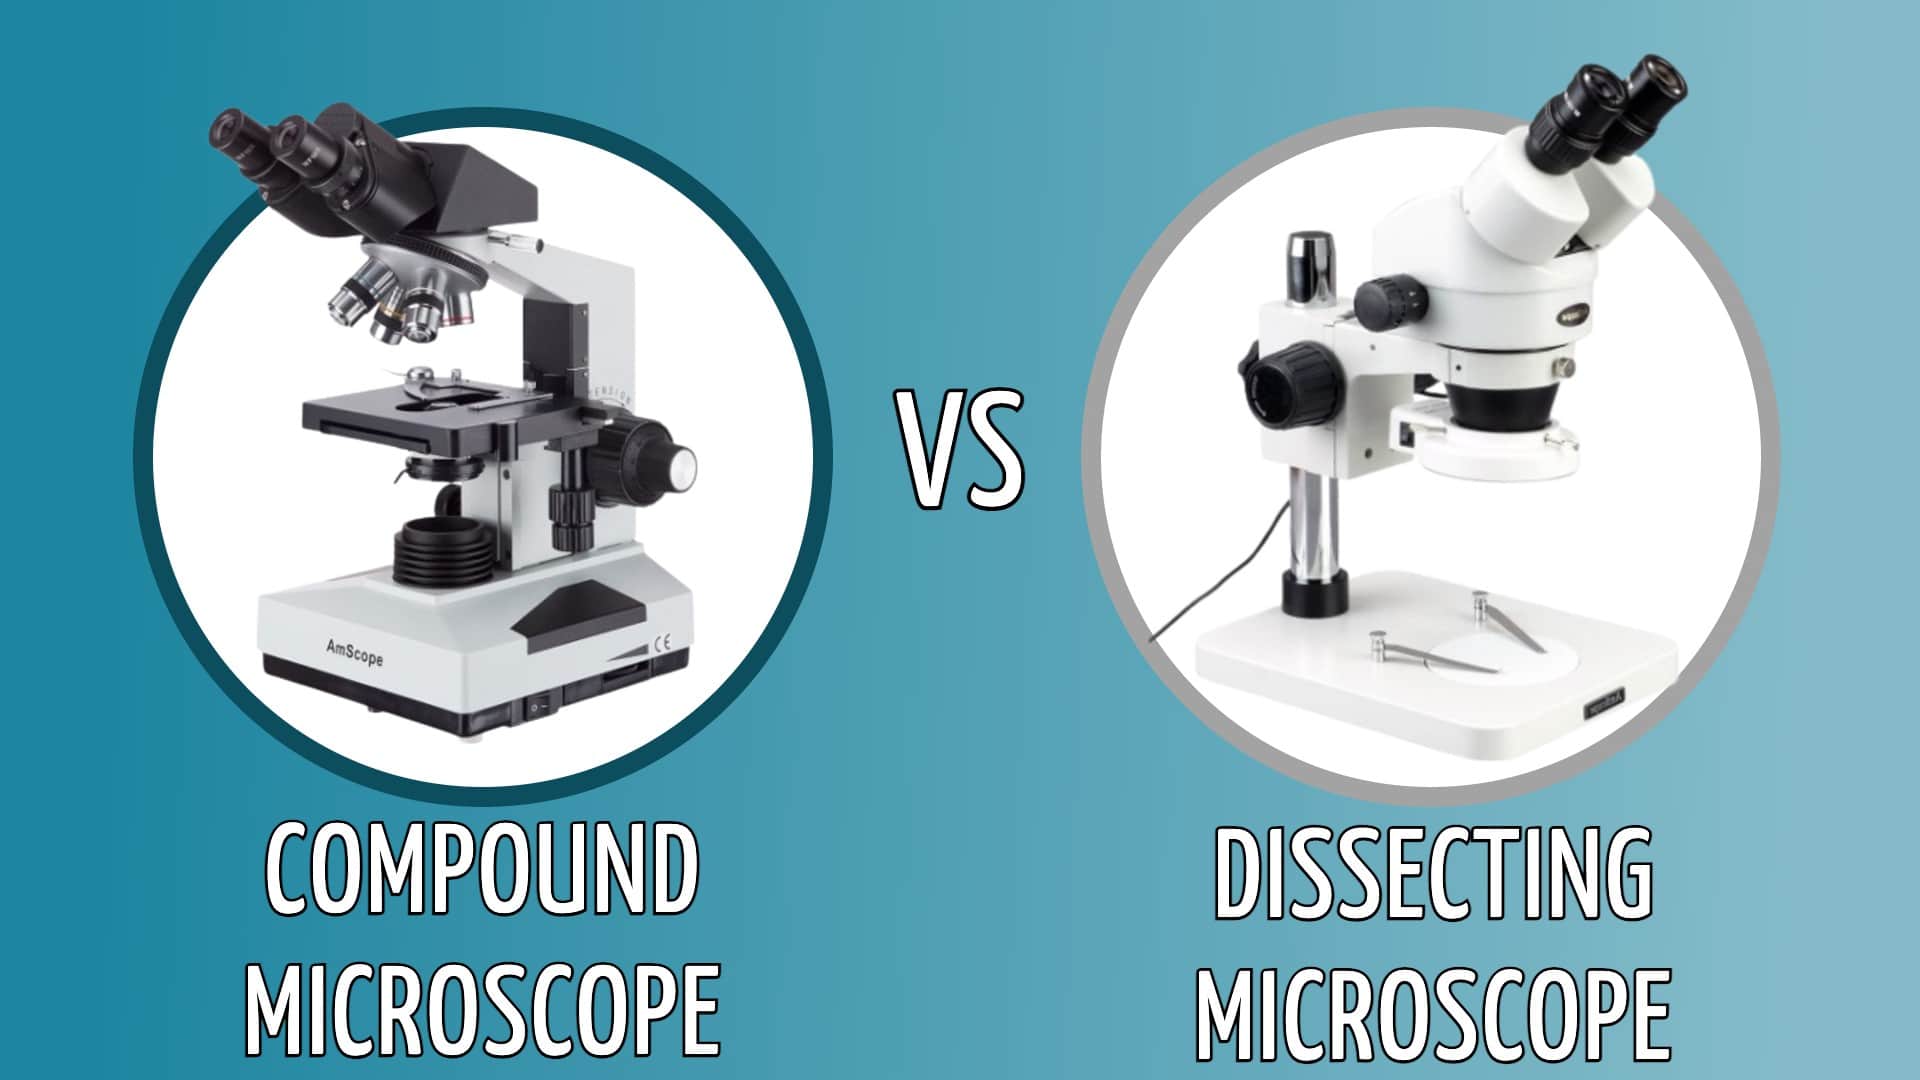 میکروسکوپ تشریحی در مقایسه با میکروسکوپ ترکیبی 